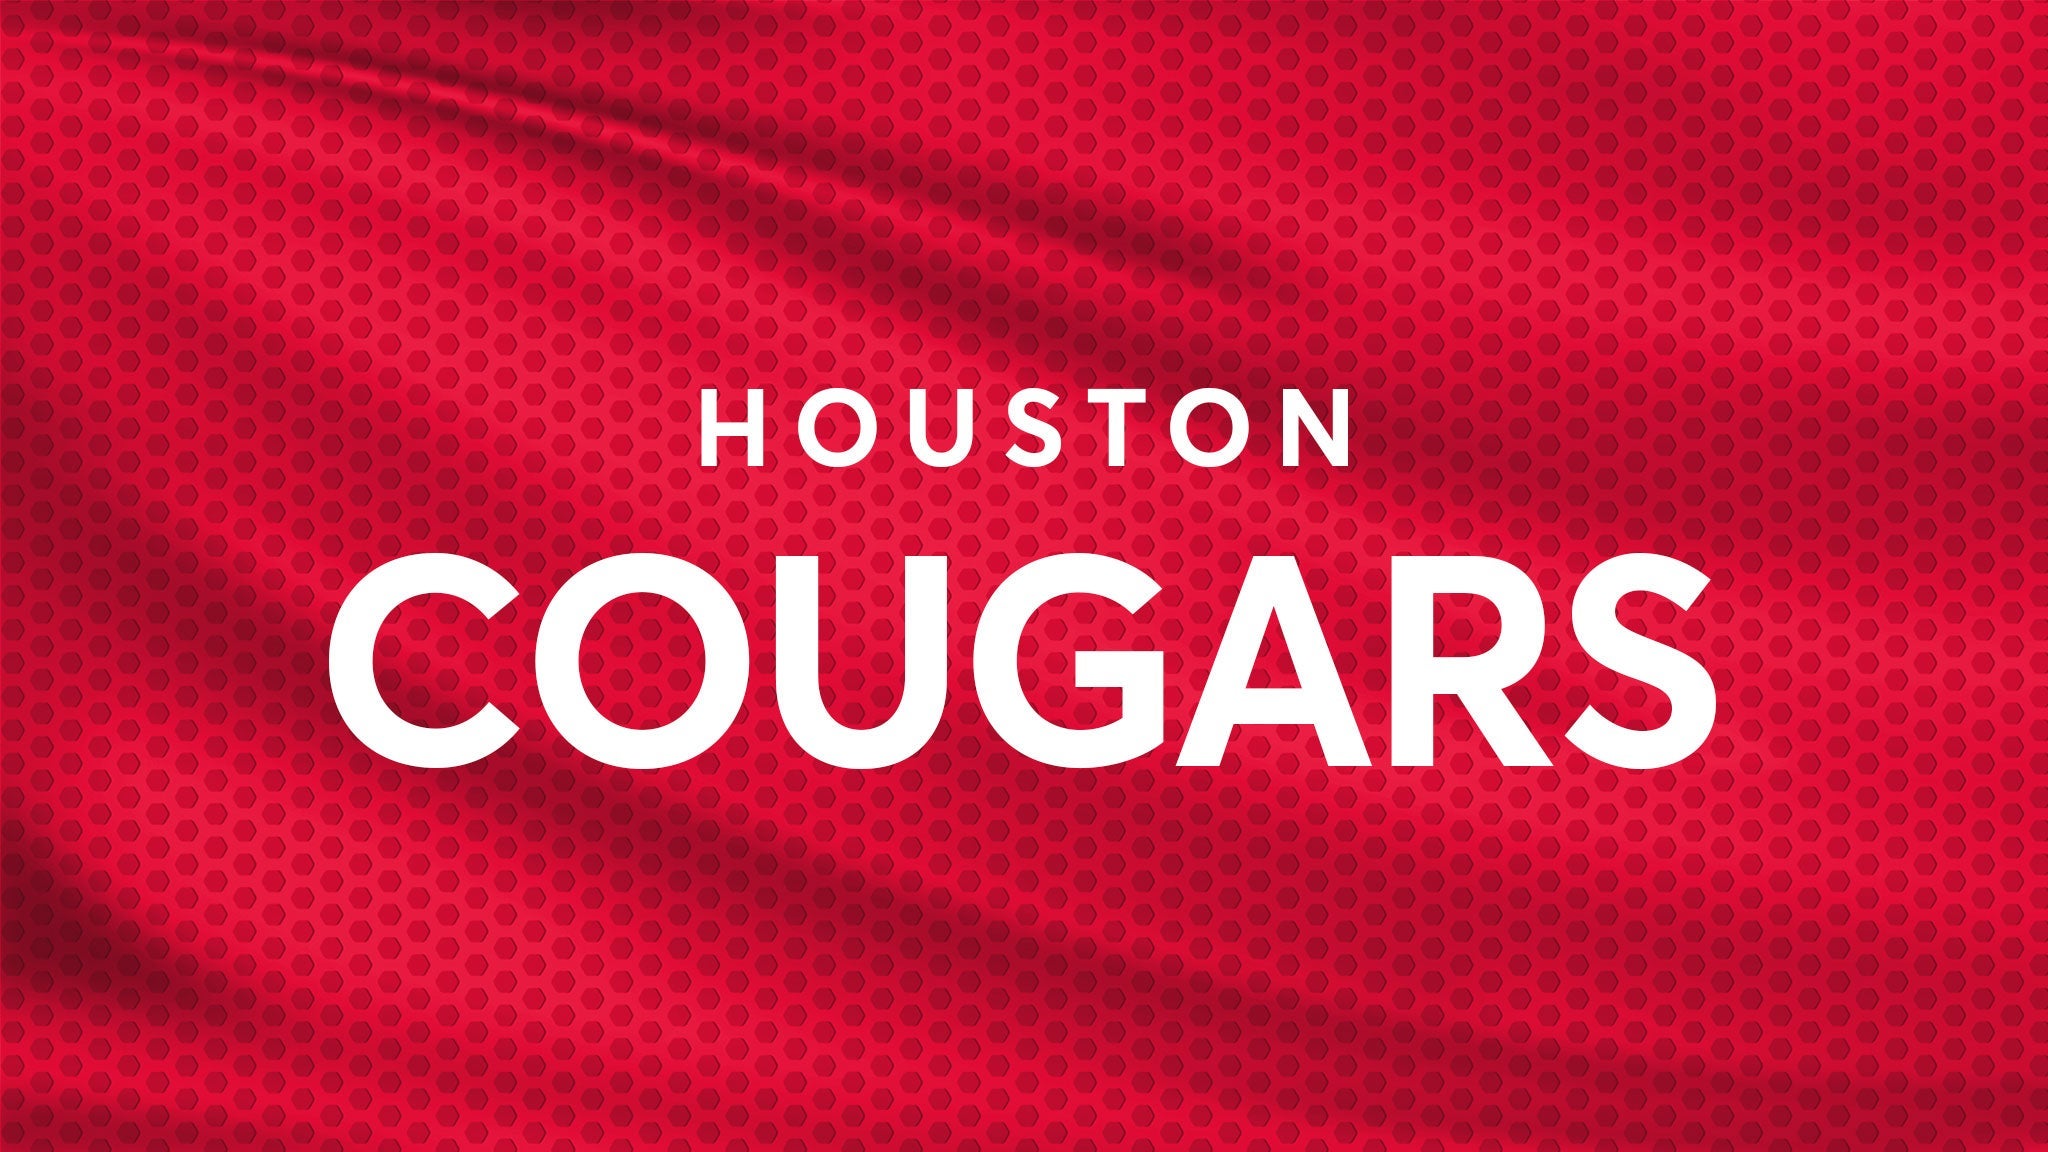 Houston Cougars Football vs. Rice Owls Football hero